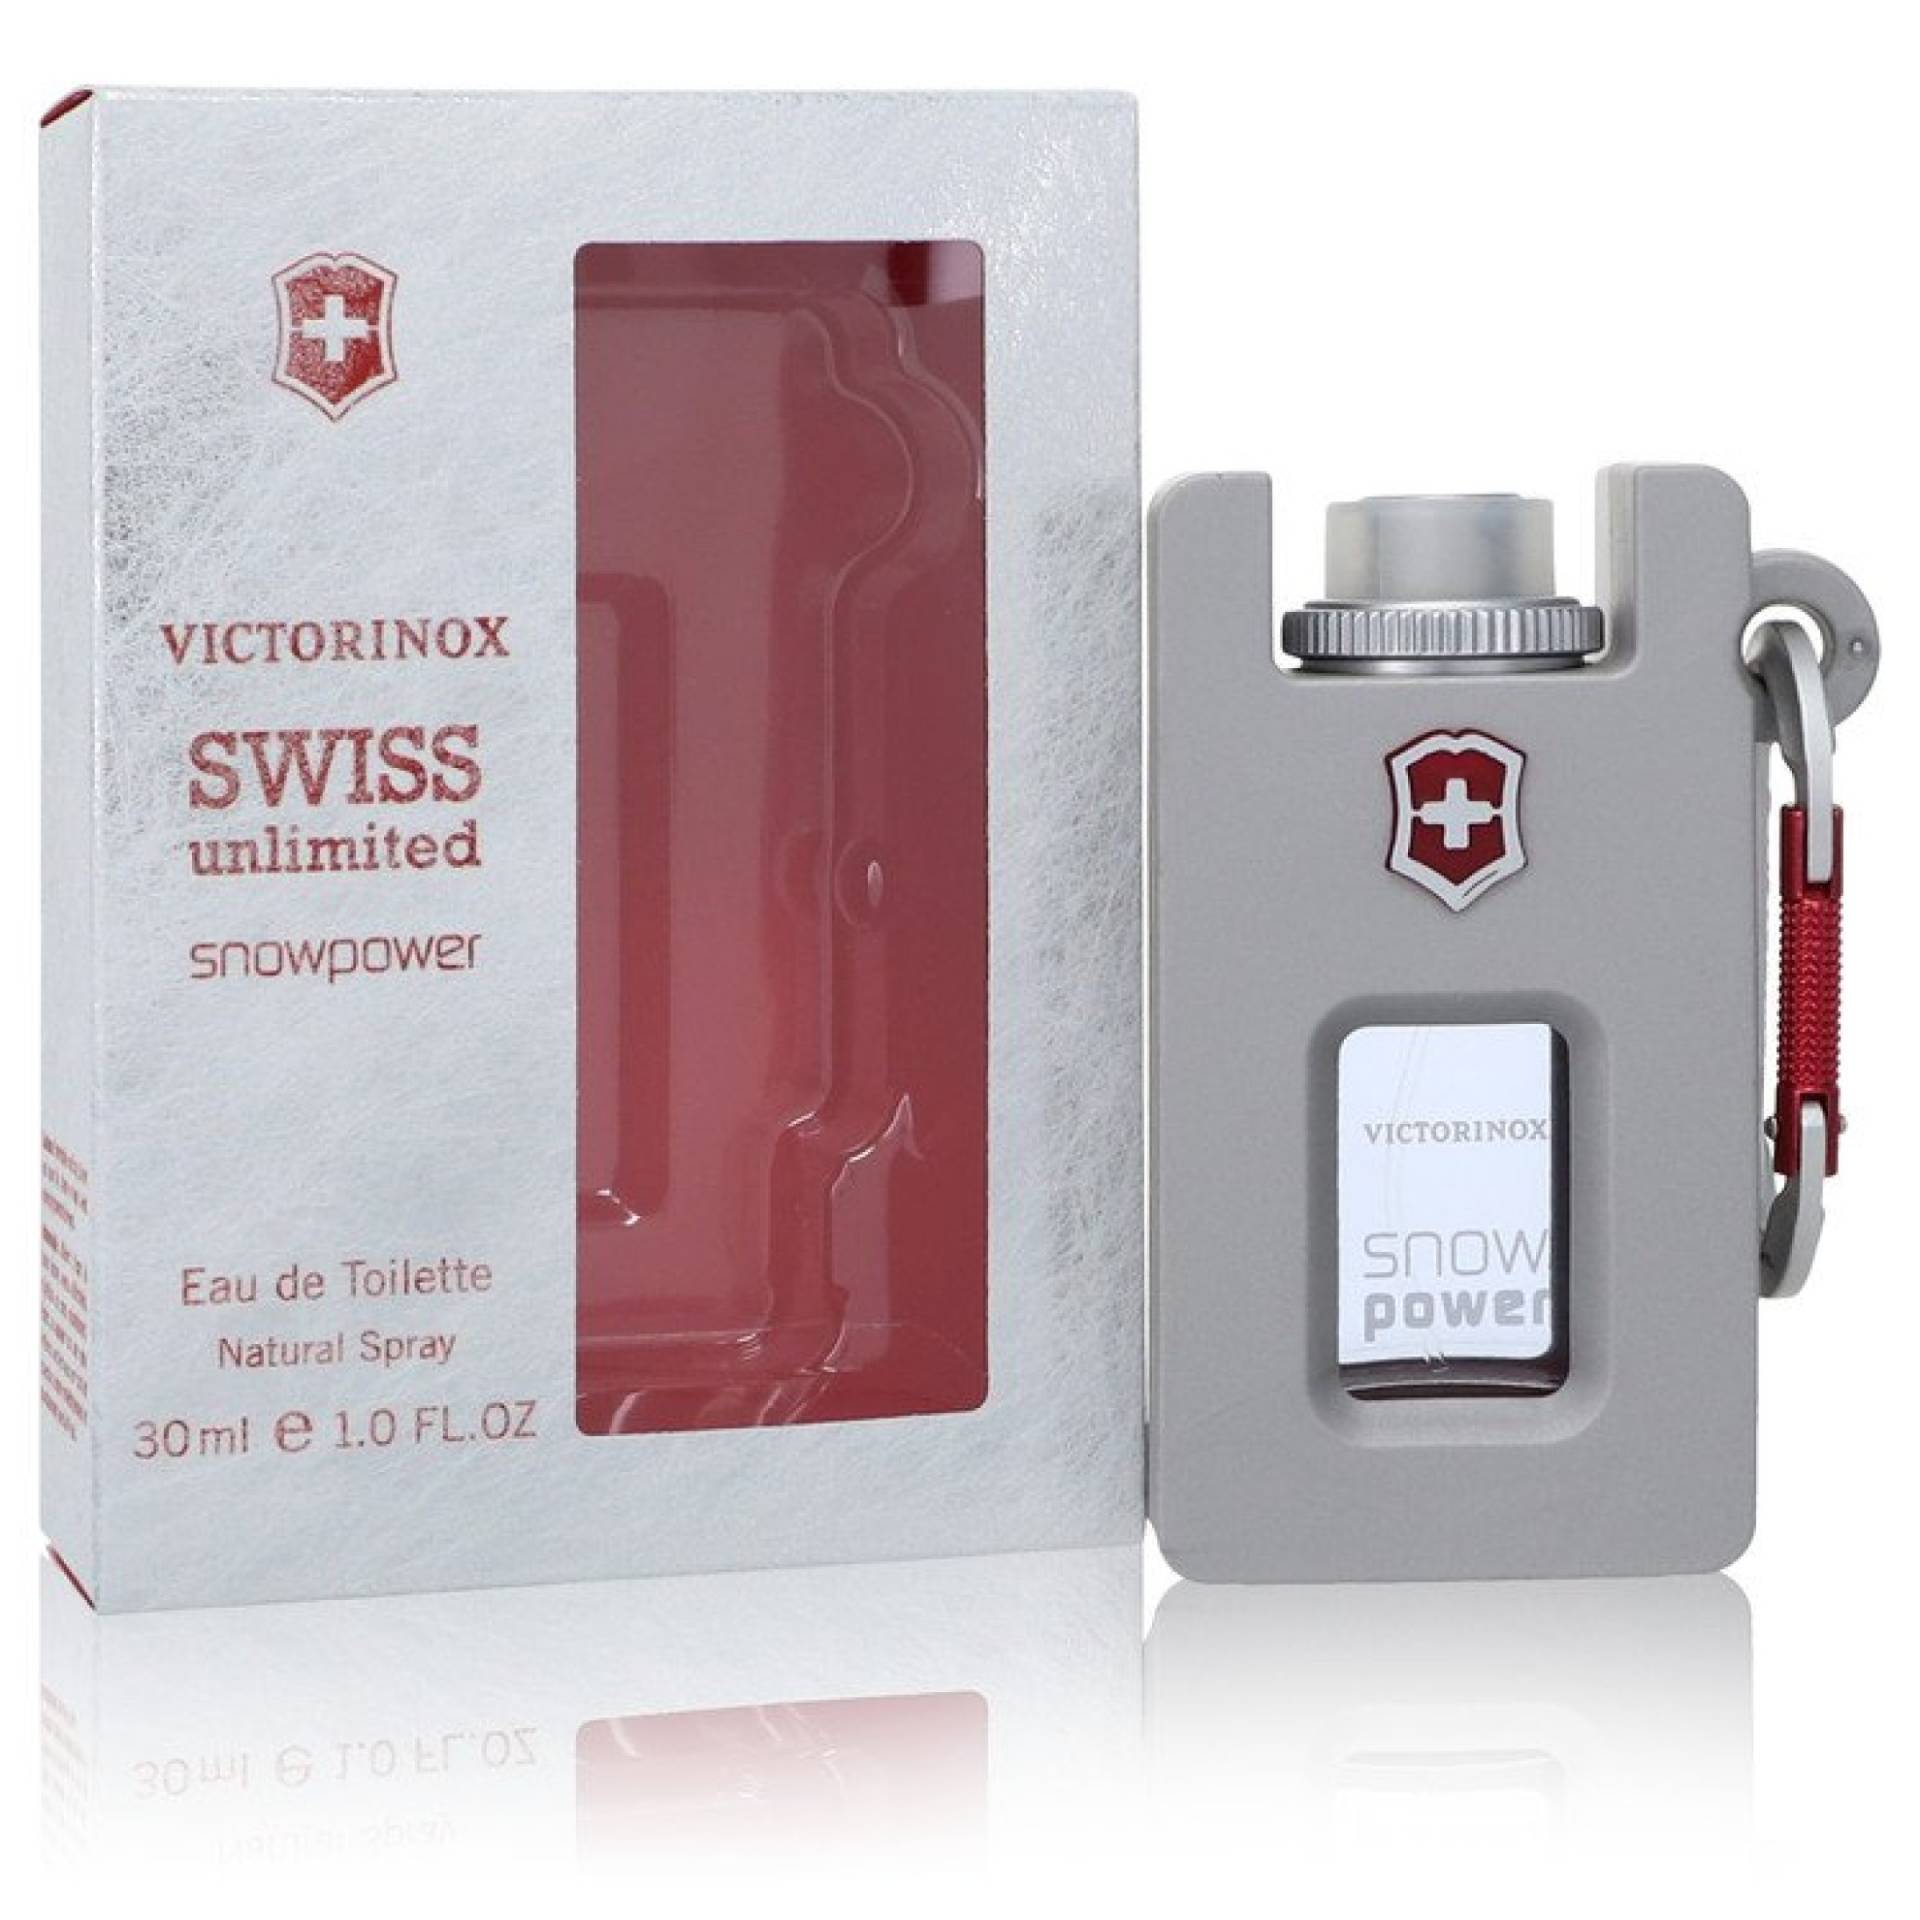 Swiss Army Swiss Unlimited Snowpower Eau De Toilette Spray 30 ml von Victorinox